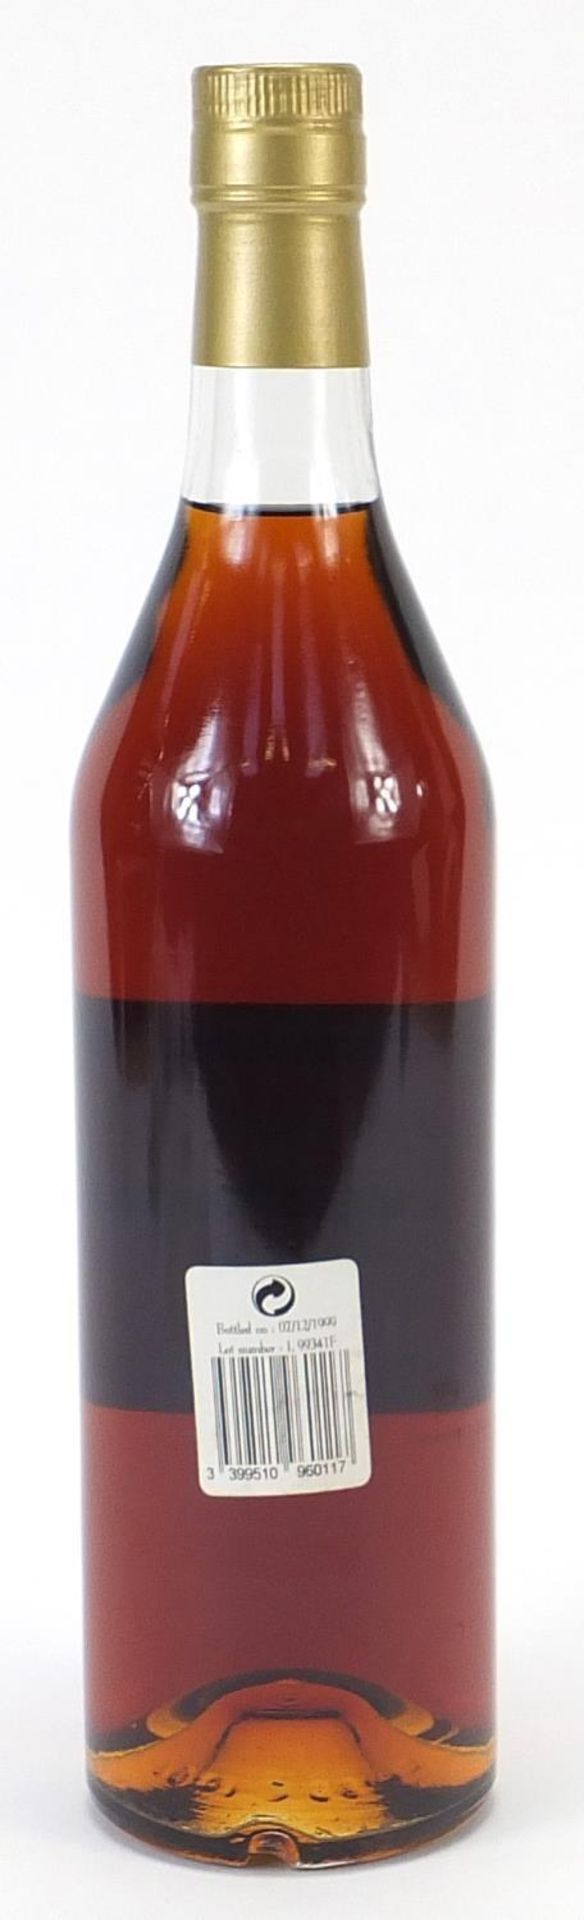 Bottle of 1986 Domaine de Papolle bas Armagnac - Image 2 of 3